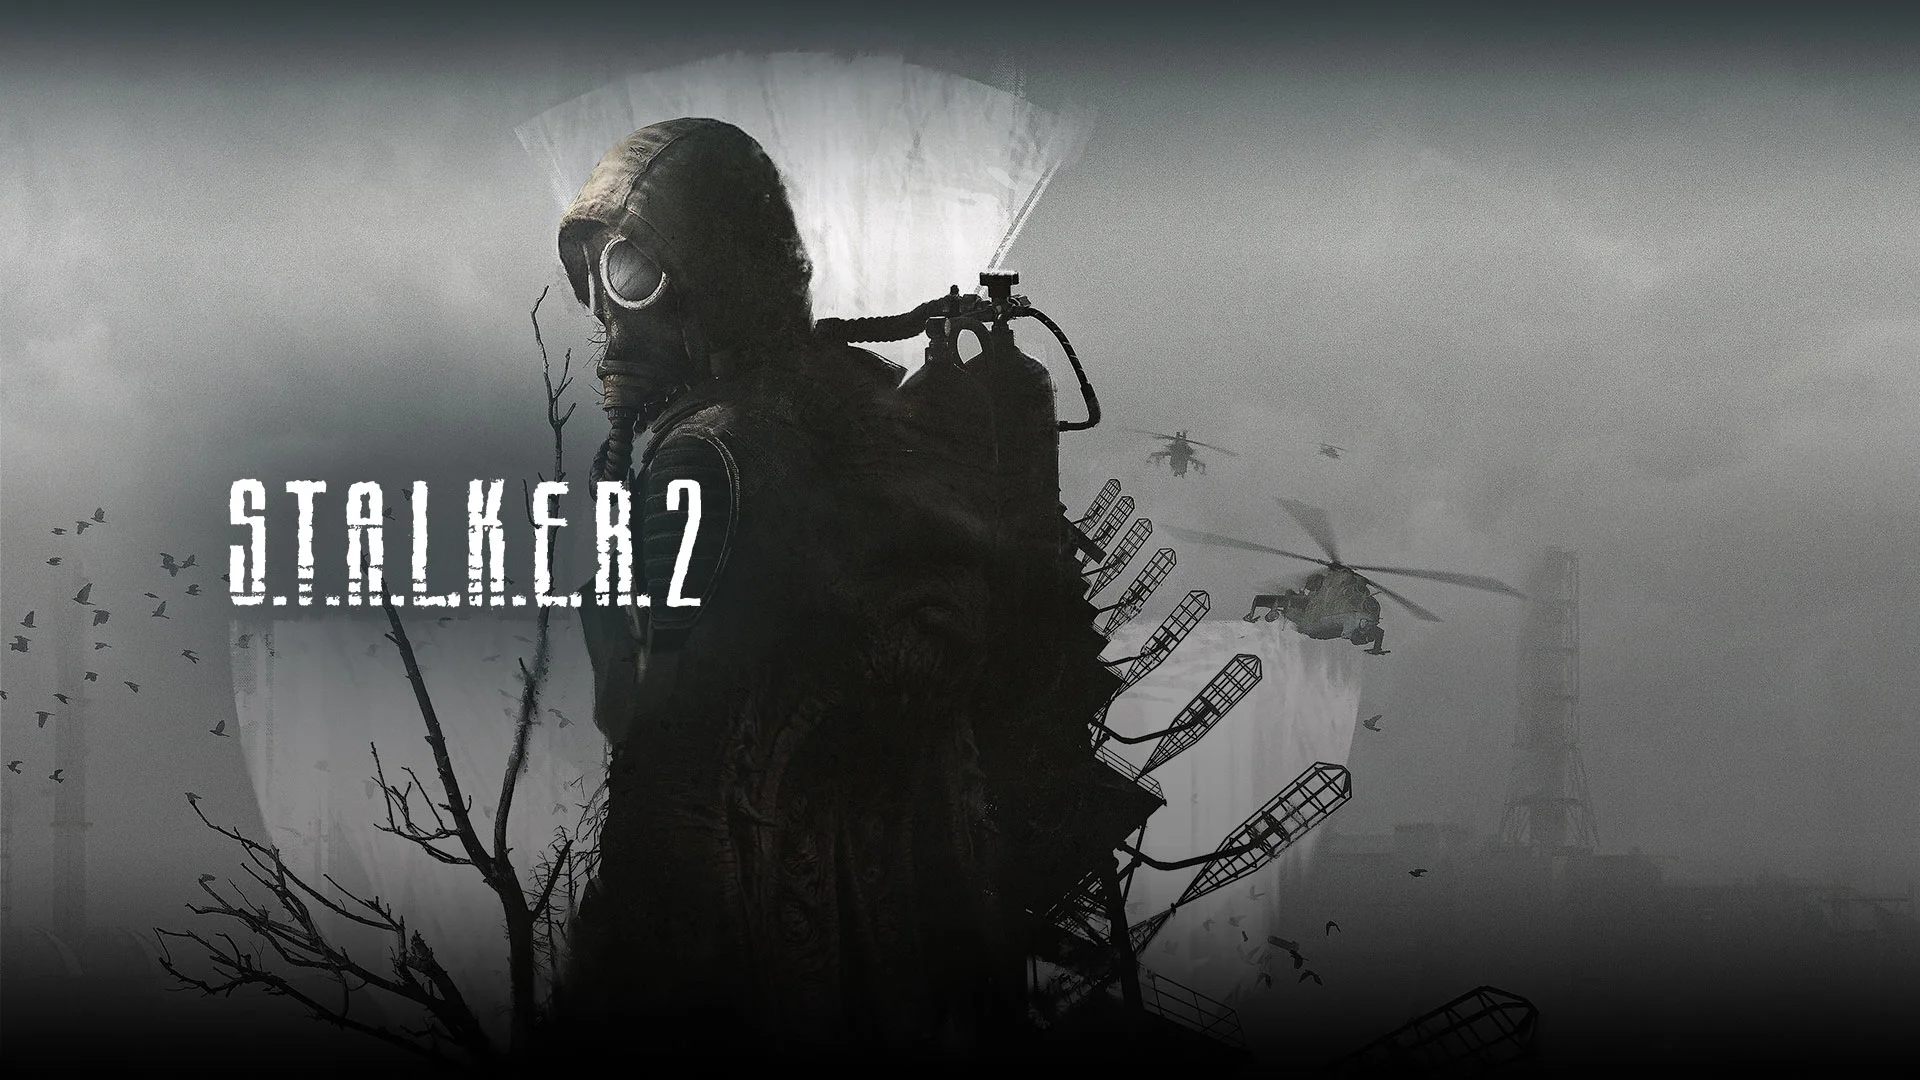 Актёр озвучки S.T.A.L.K.E.R. 2 рассказал, что игру хотят выпустить «к зиме» - изображение обложка